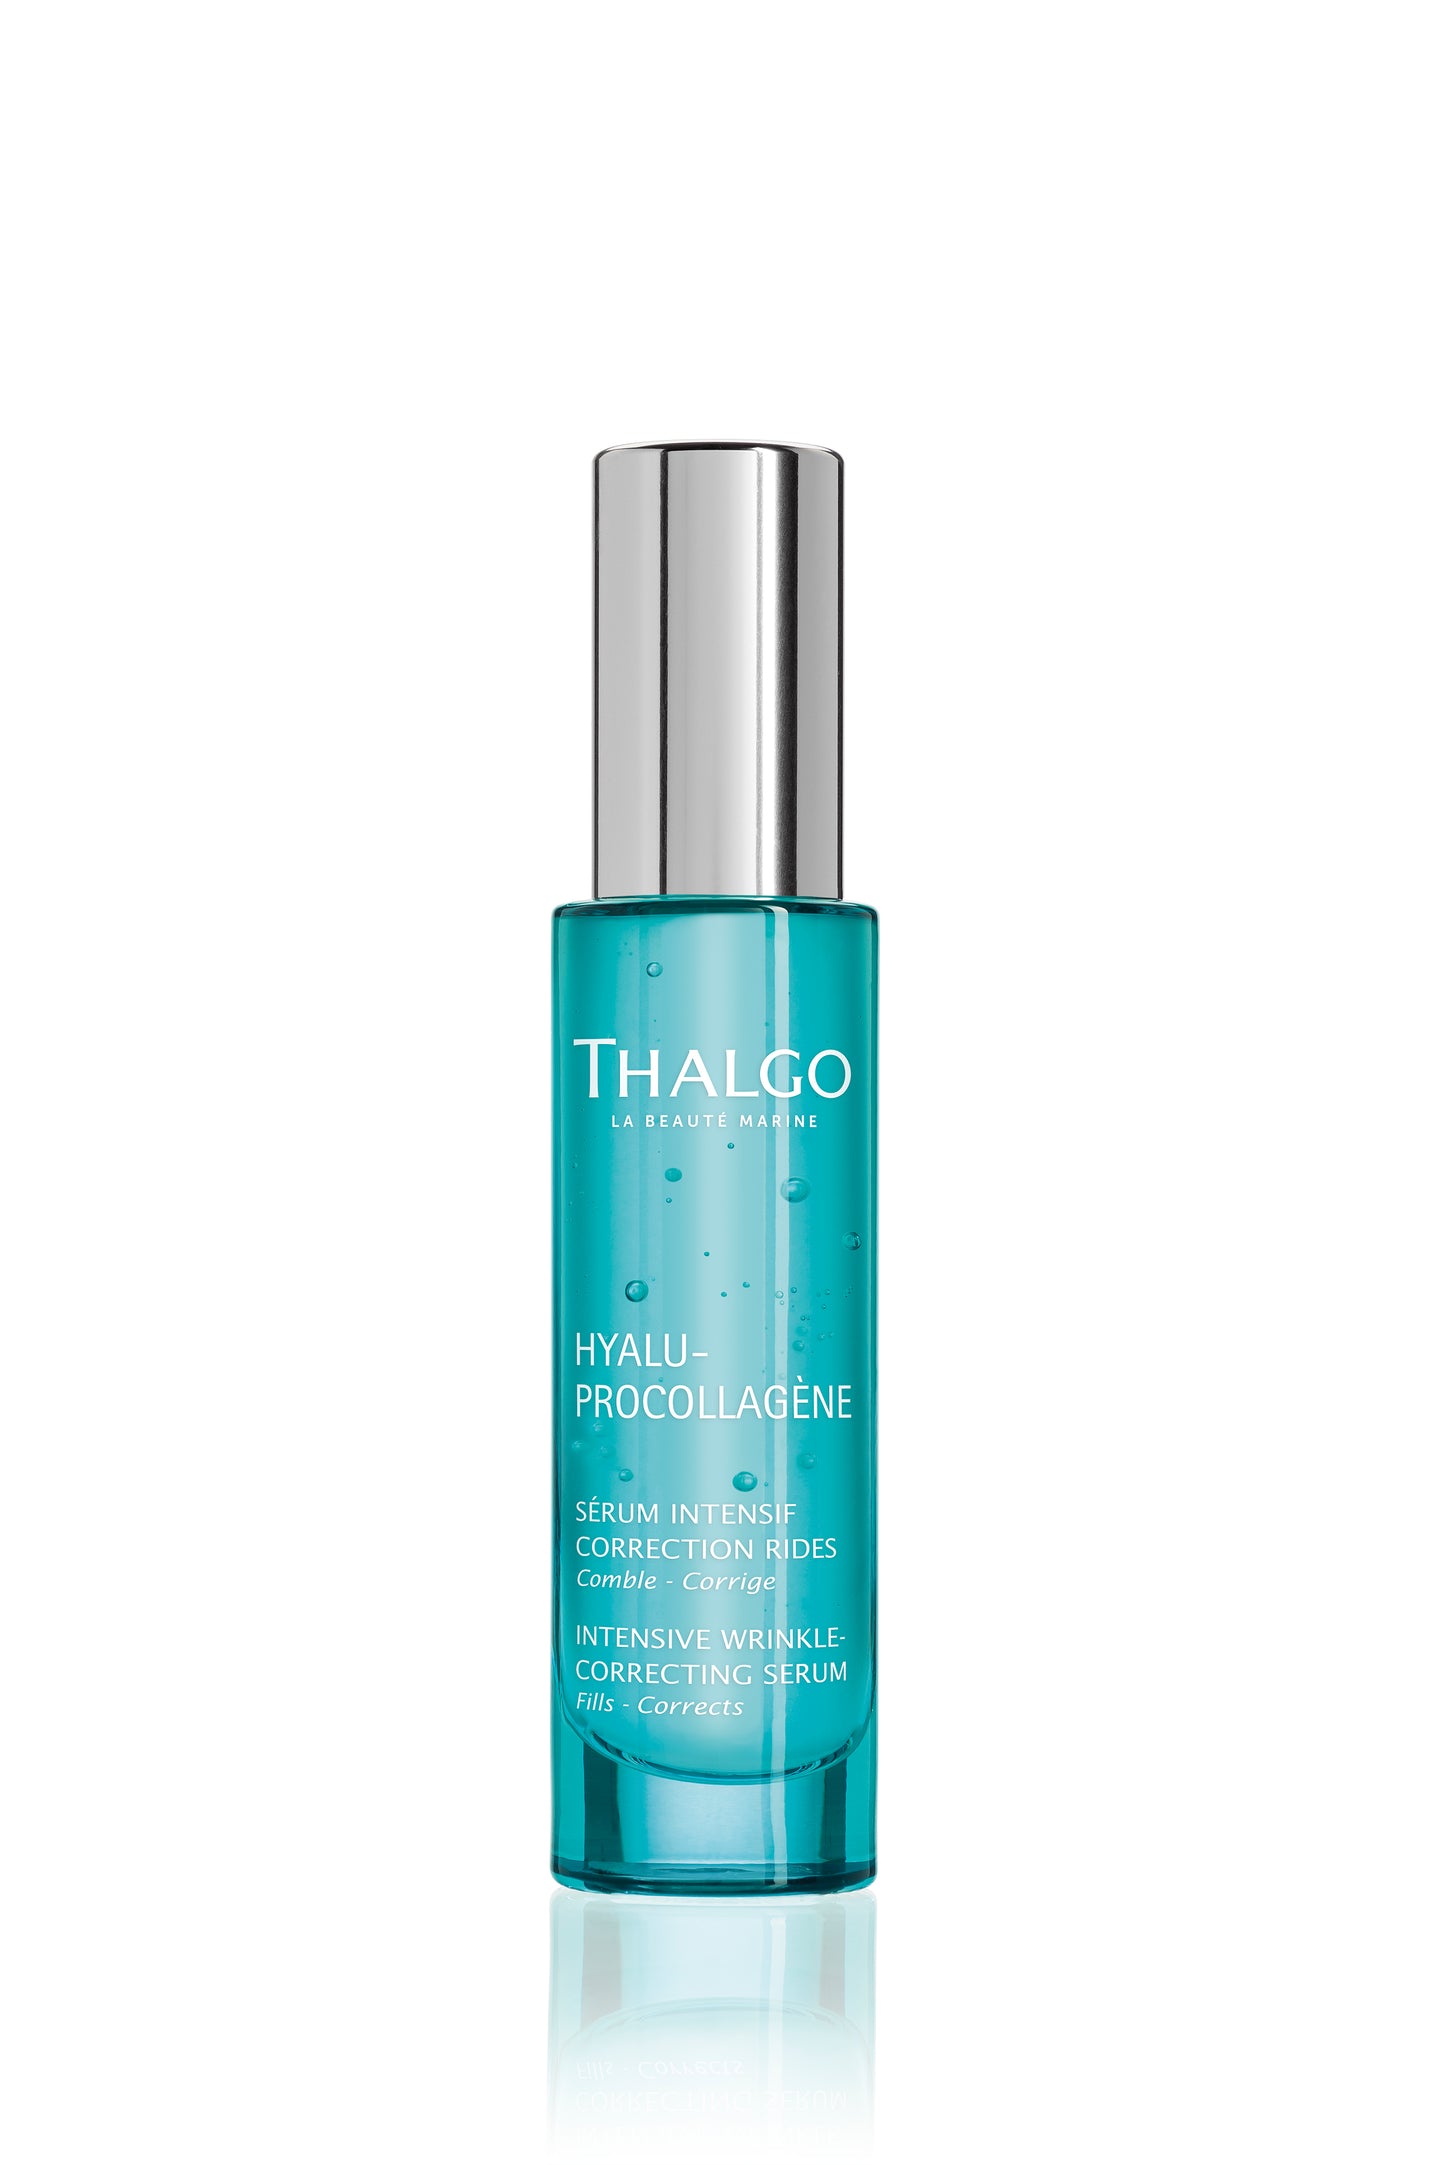 Thalgo Intensive Wrinkle-Correcting Serum - (30ml) - Sabnatural